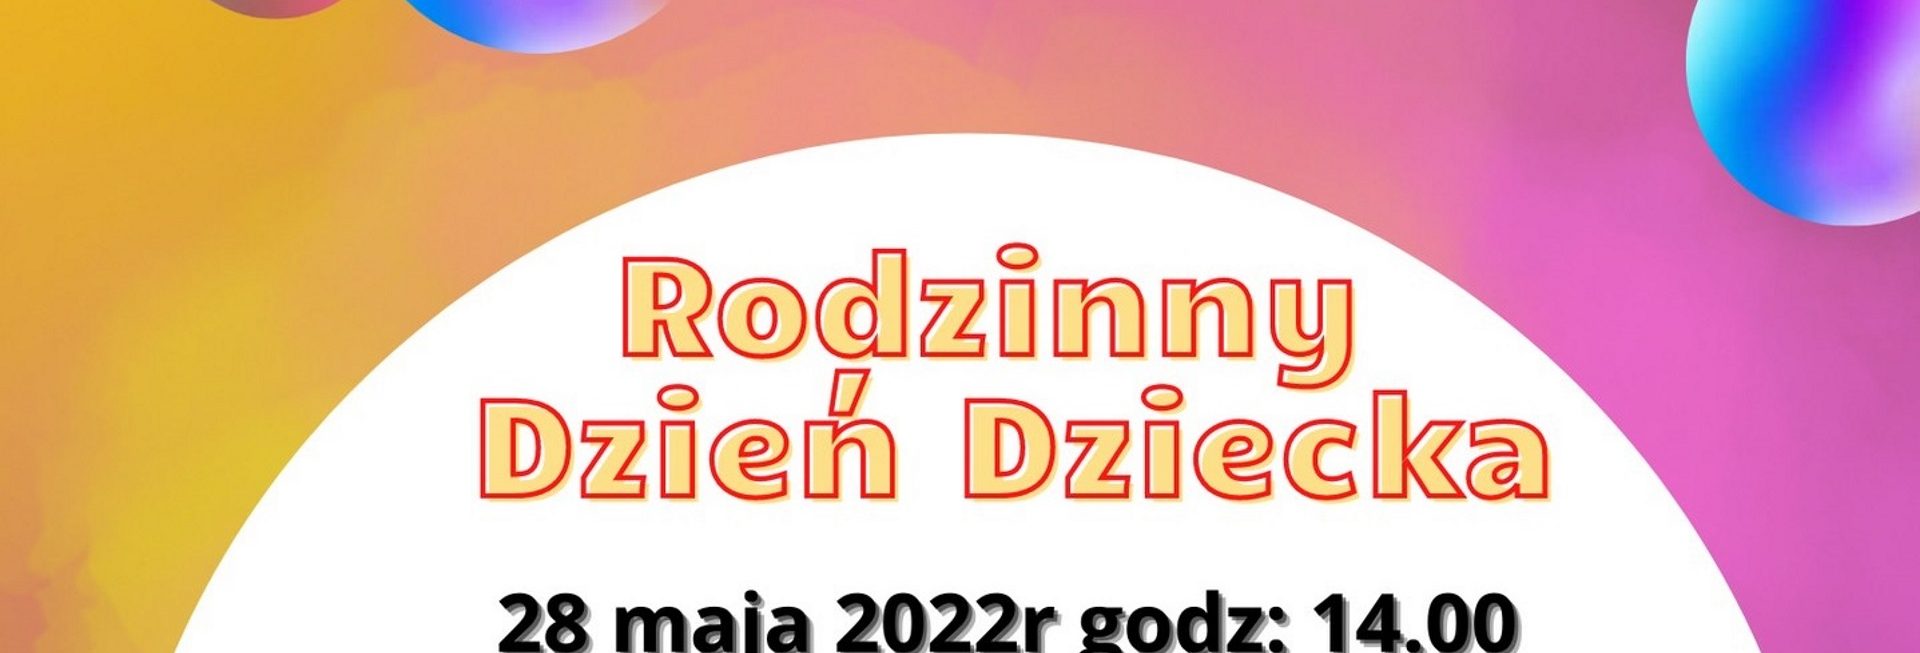 Plakat graficzny zapraszający do Ornety na Rodzinny Dzień Dziecka Orneta 2022. 